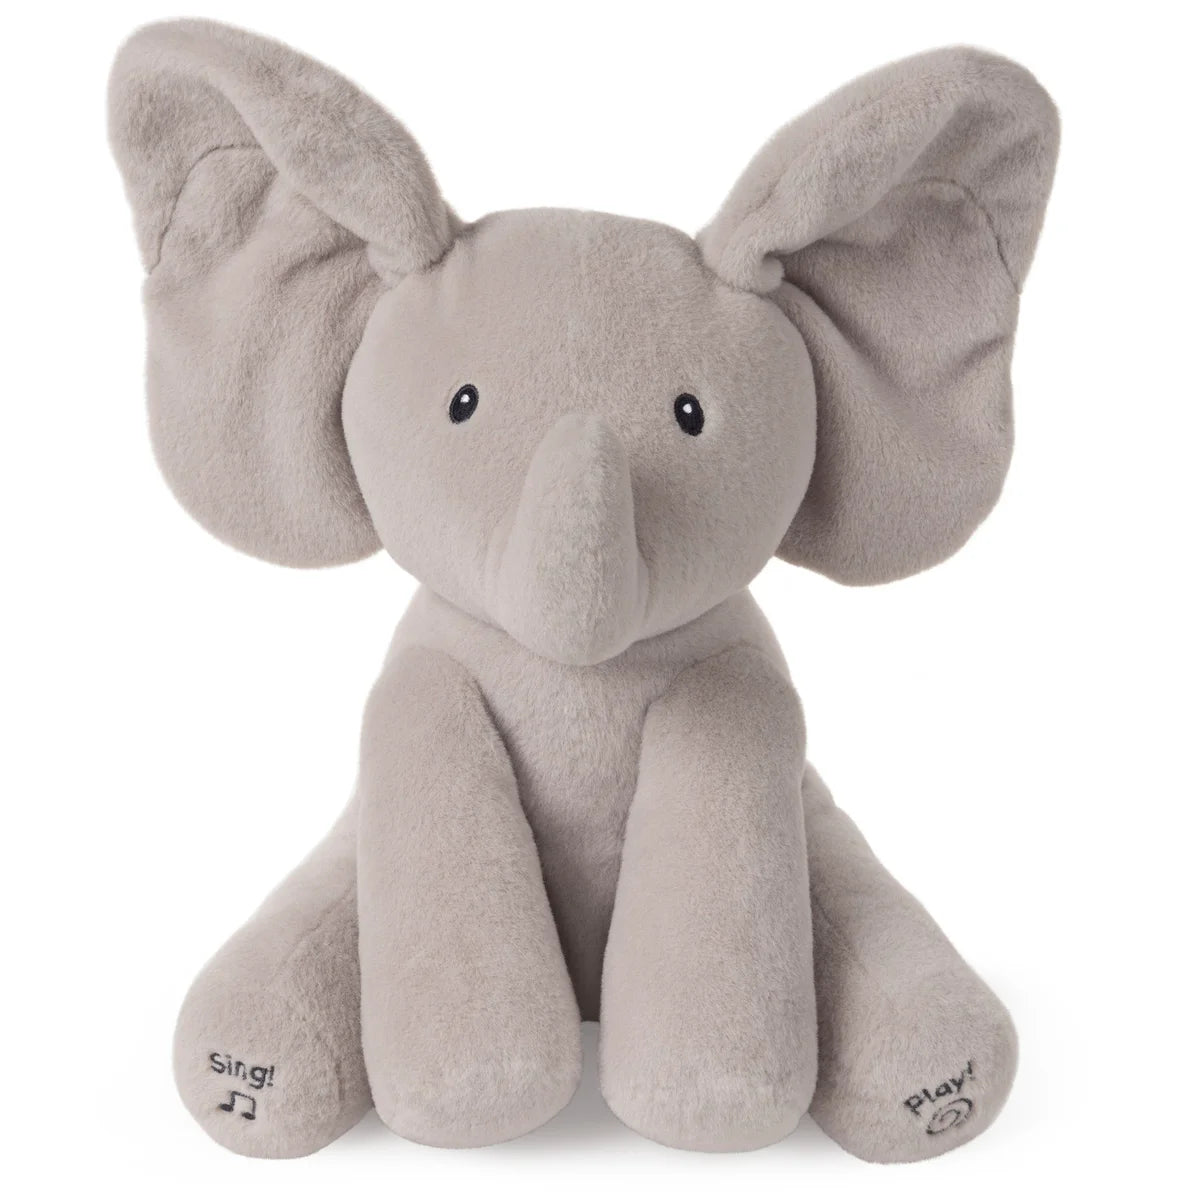 Gund Animated Flappy The Elephant Stuffed Animal Plush, Gray, 12" - Plush Toys Heretoserveyou